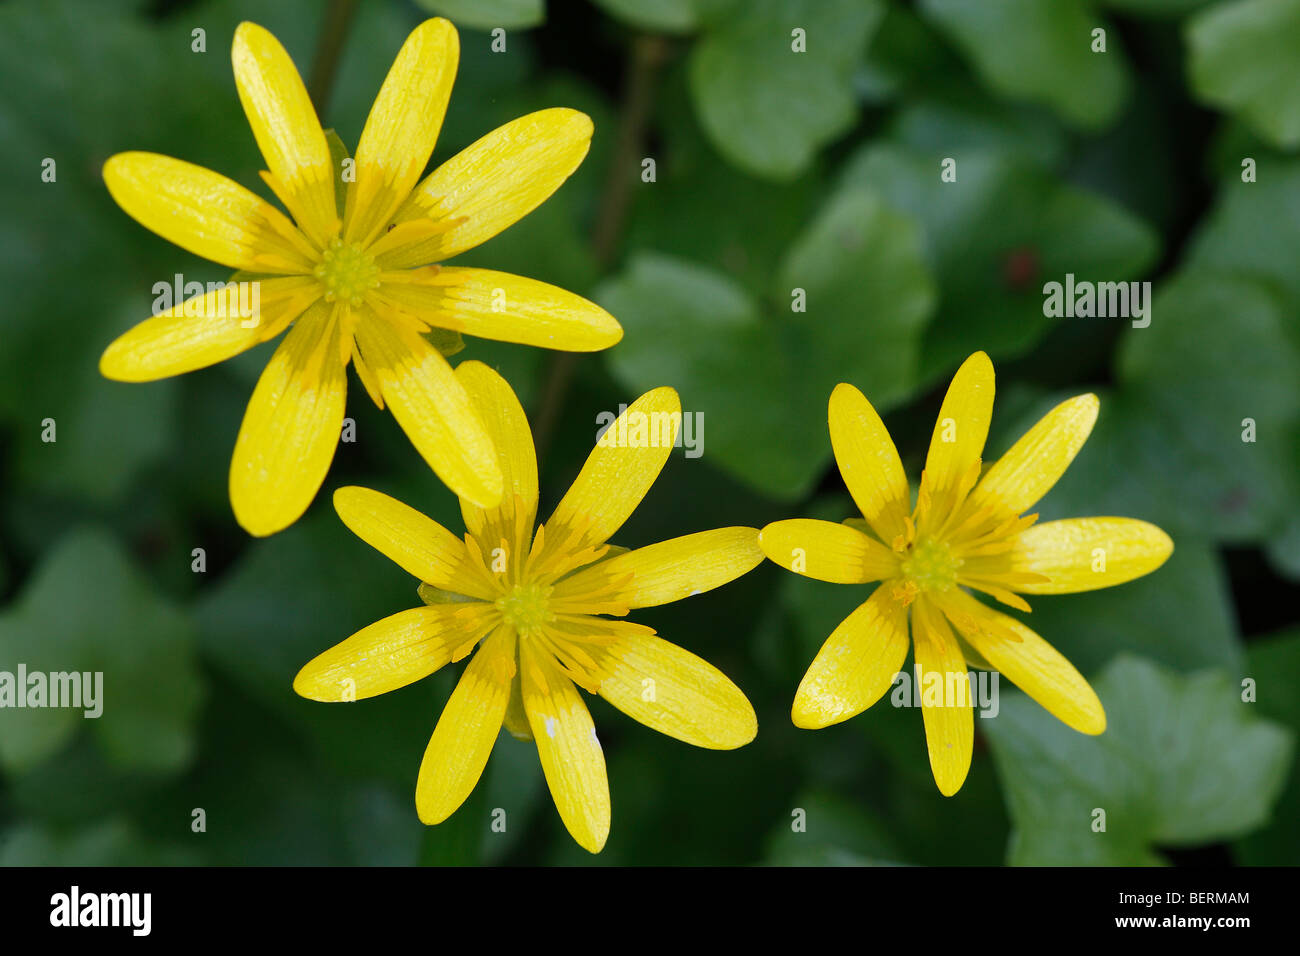 Lesser celandine / Pilewort (Ranunculus ficaria subsp. bulbilifer / Ficaria verna subsp. bulbifer) in flower Stock Photo